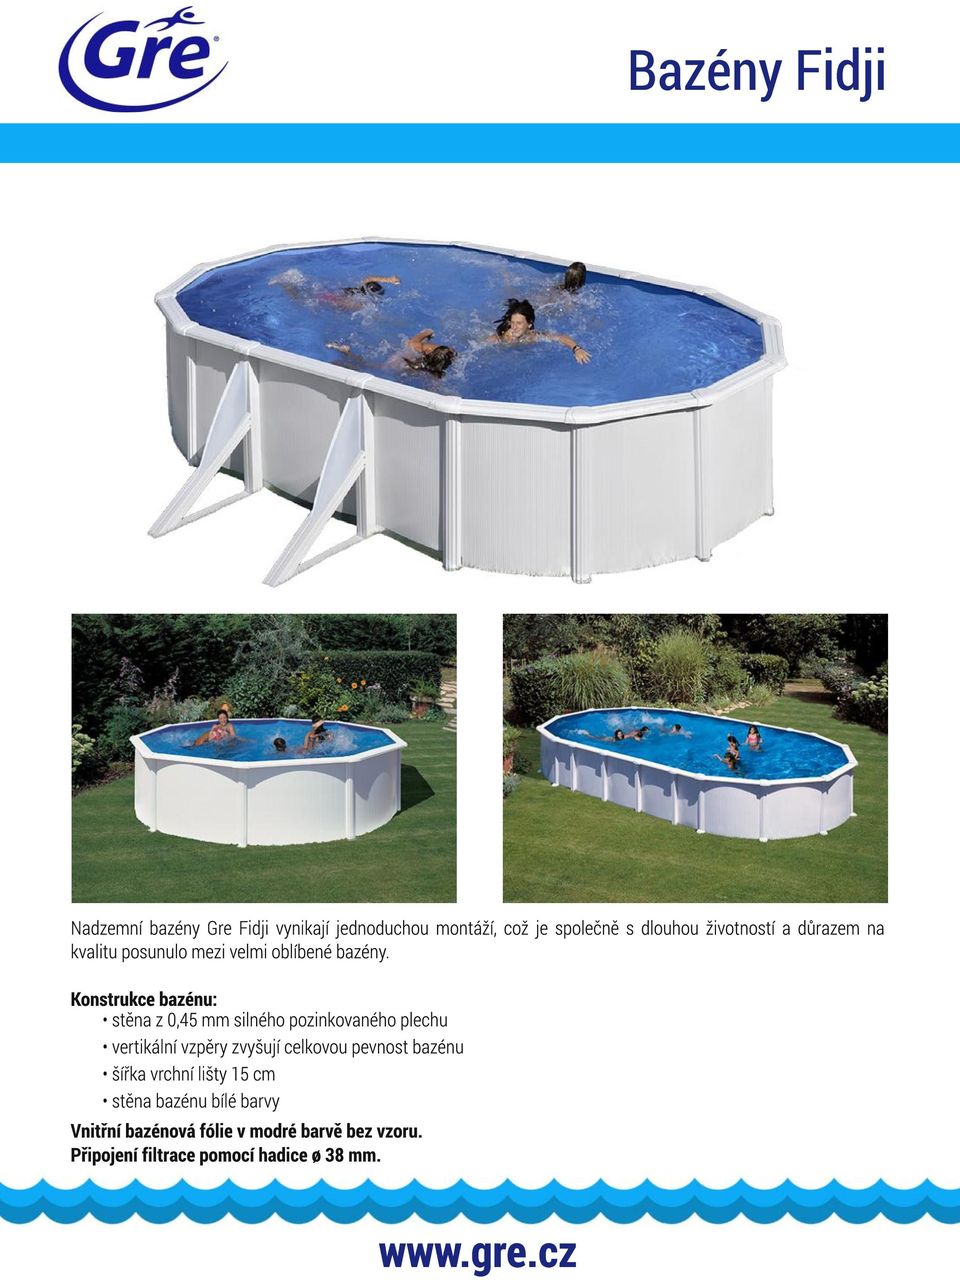 Konstrukce bazénu: stěna z 0,45 mm silného pozinkovaného plechu vertikální vzpěry zvyšují celkovou